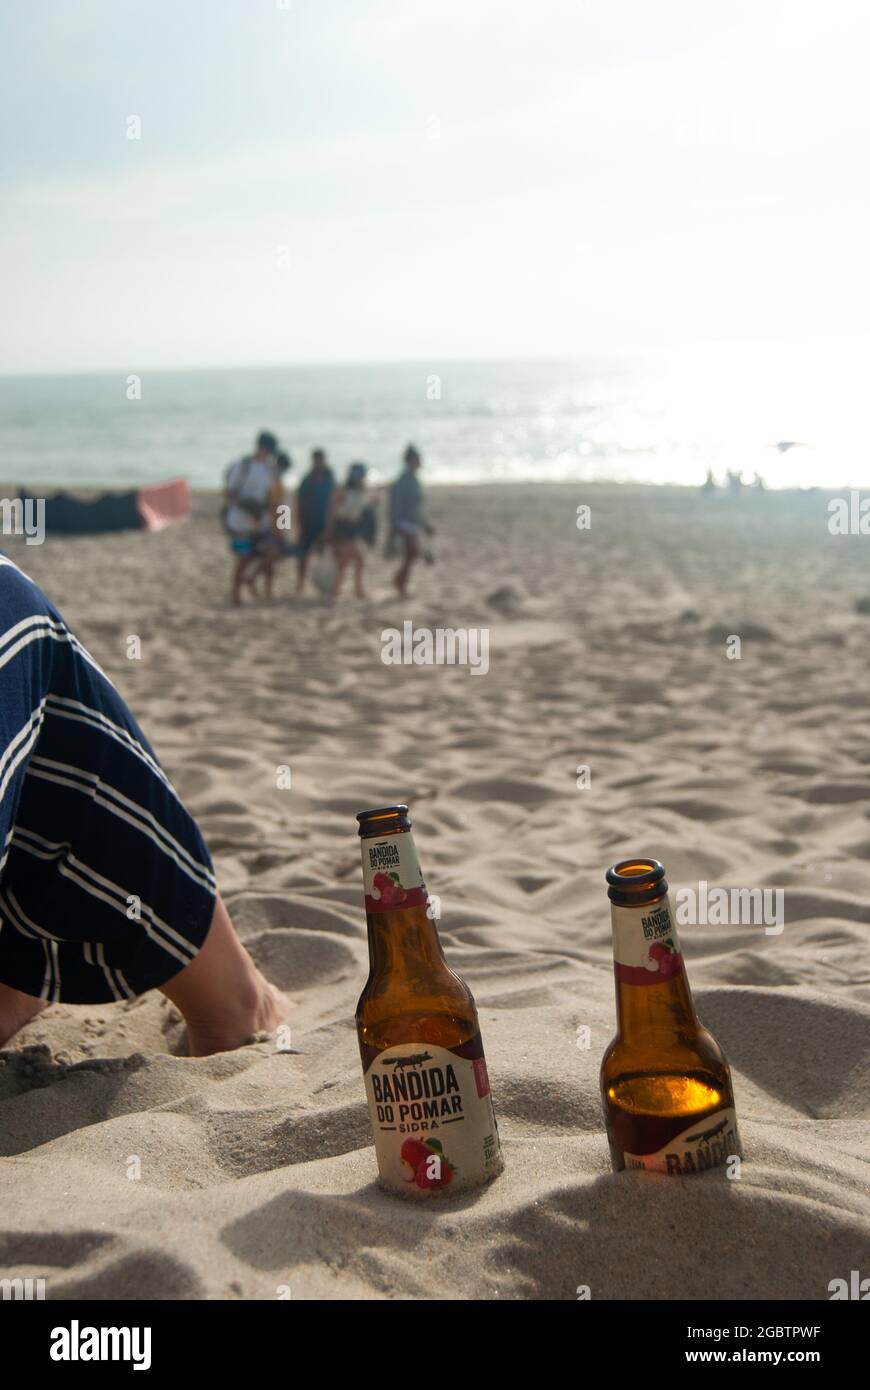 Bandida do Pomar Cider bouteilles à la plage, Portugal - Costa Nova Beach, Aveiro, 10.06.2021 Banque D'Images